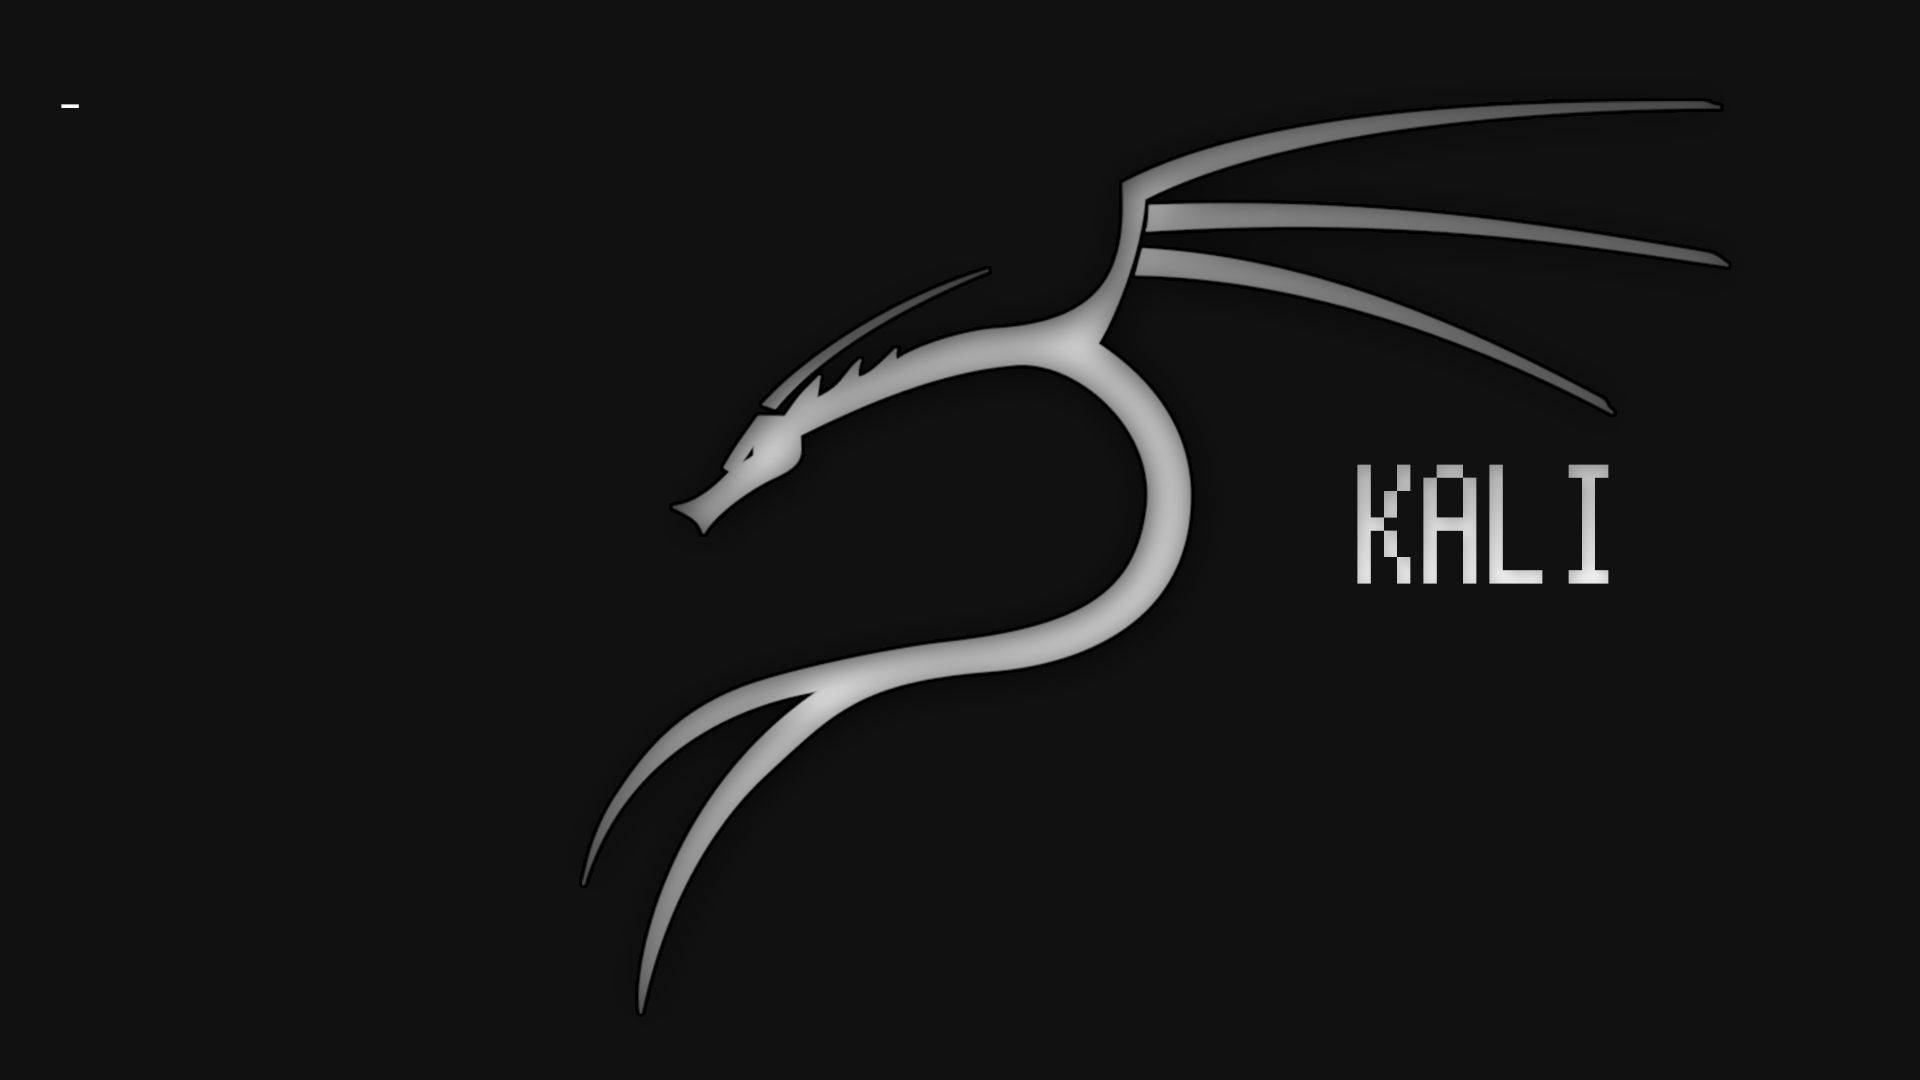 Black Dragon Kali Linux Desktop wallpapers 640x480